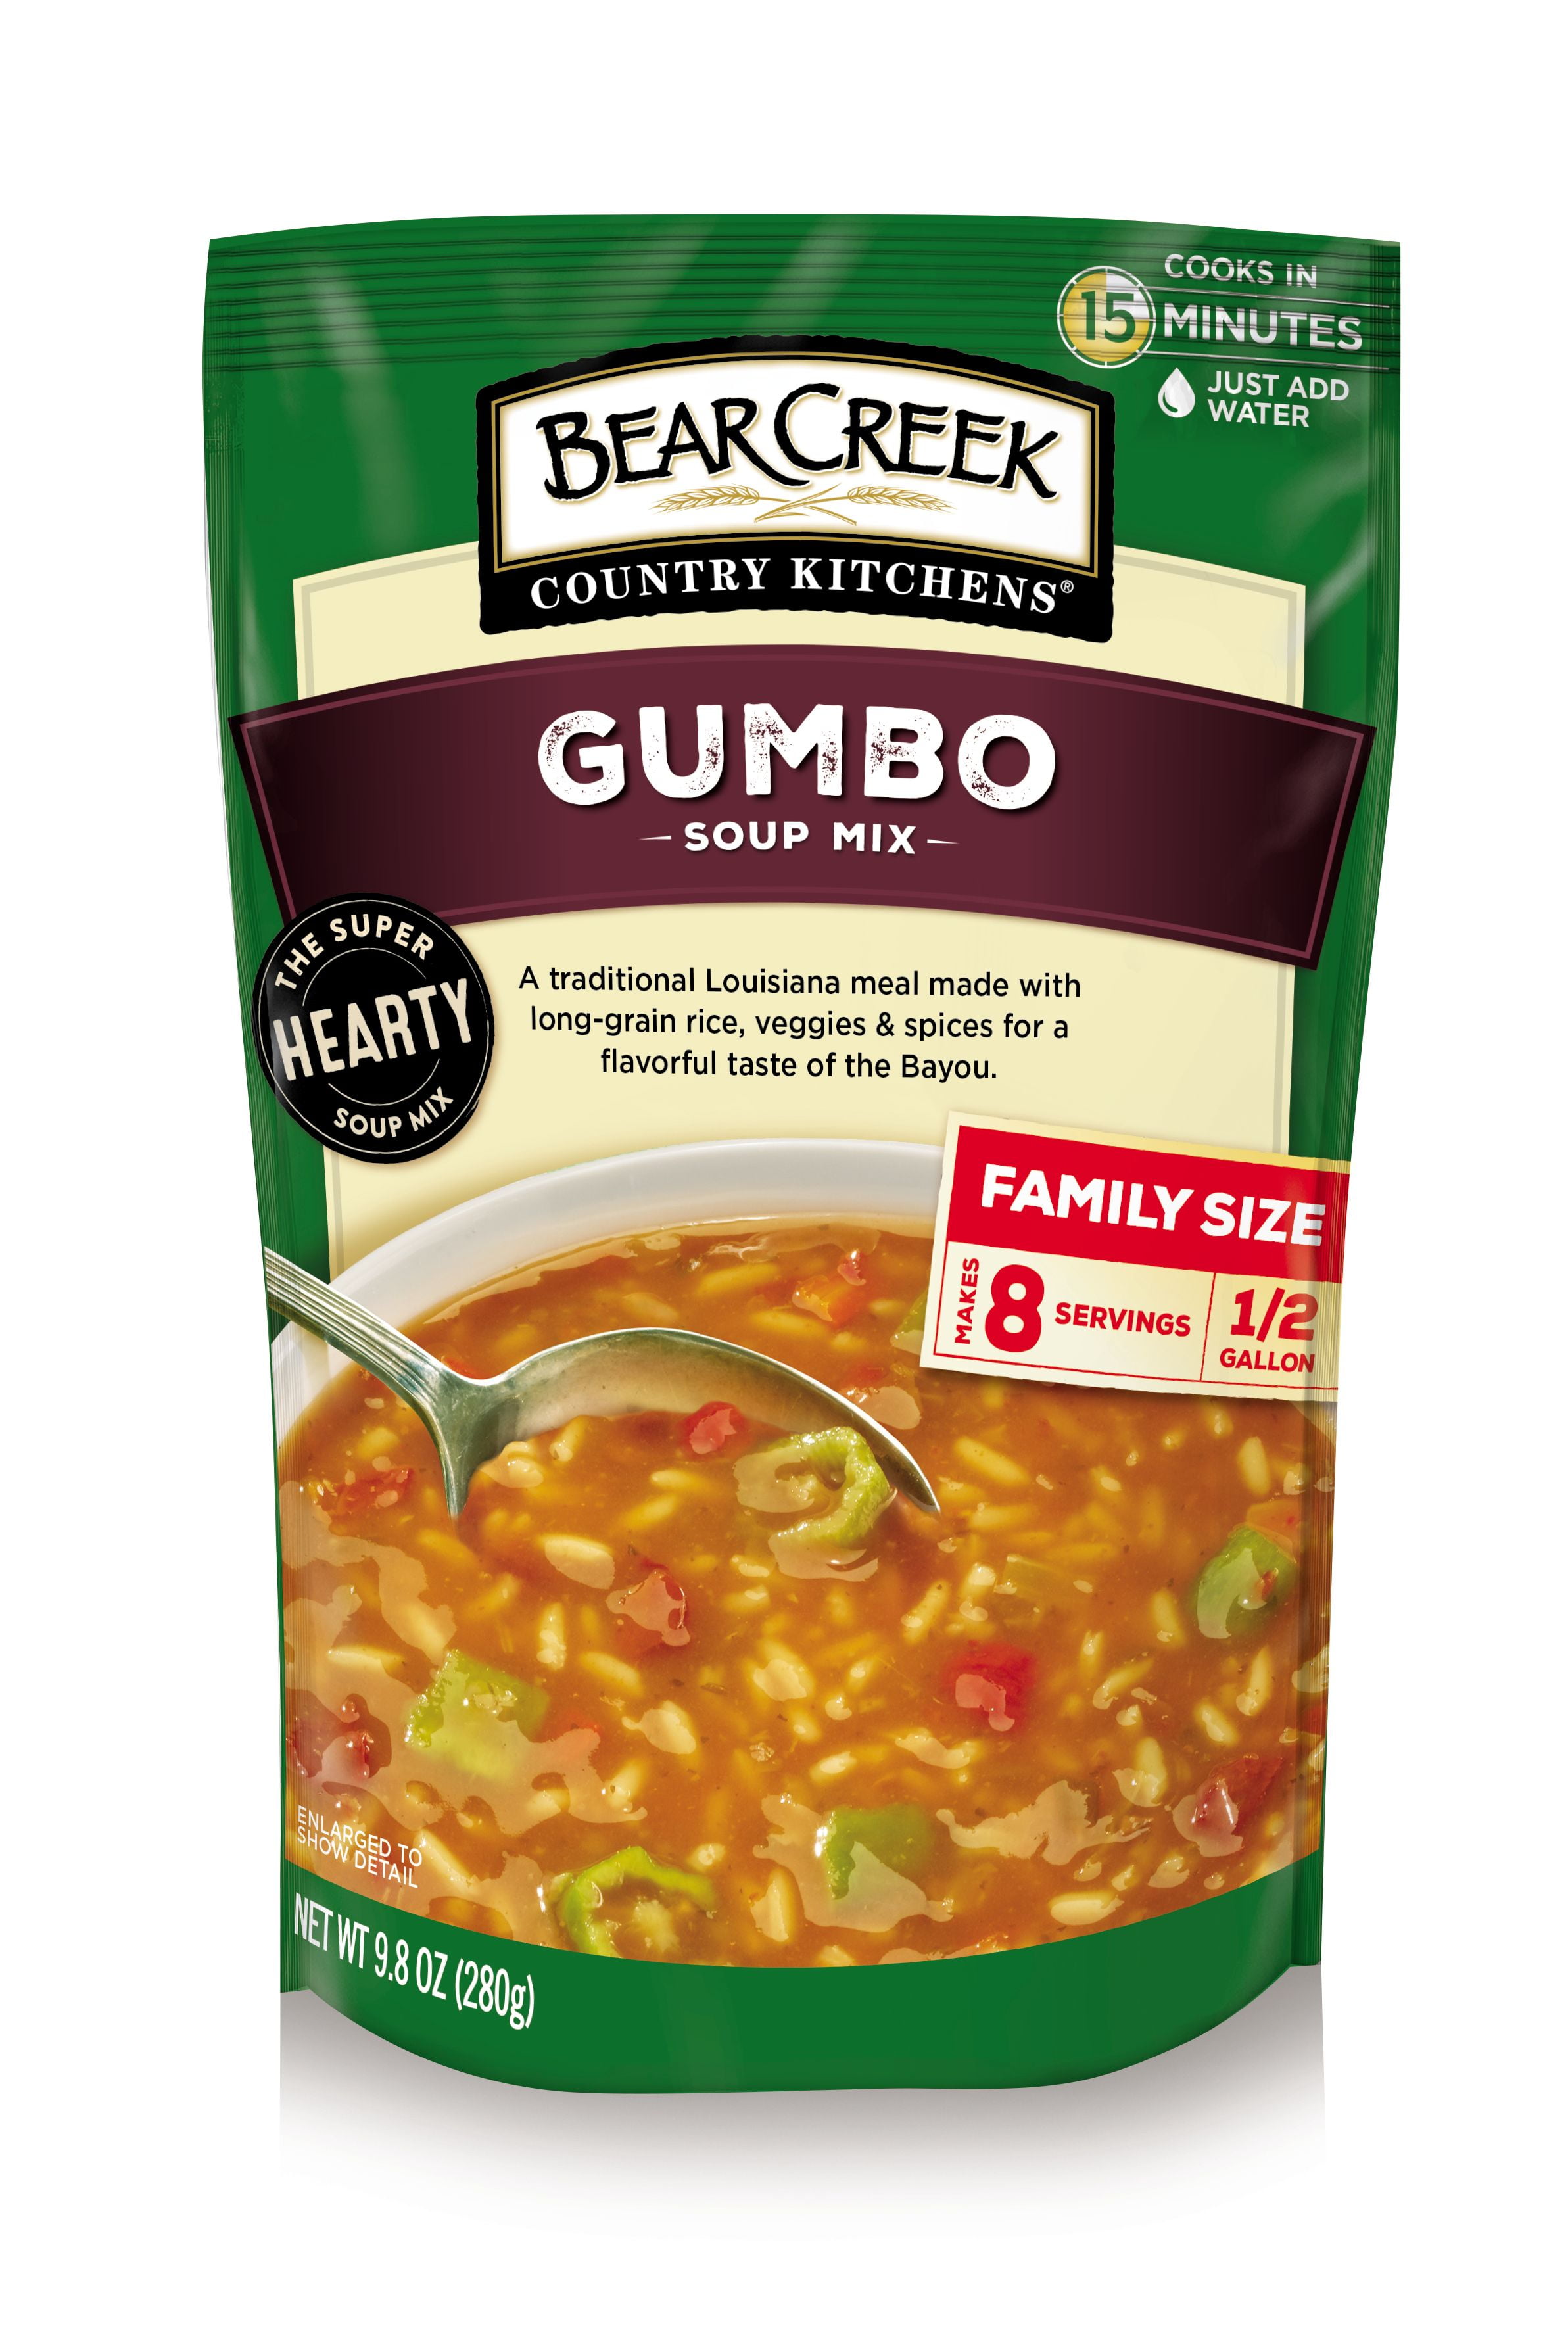 Bear Creek Country KitchensÂ® Gumbo Soup Mix 9.8 oz. Pouch